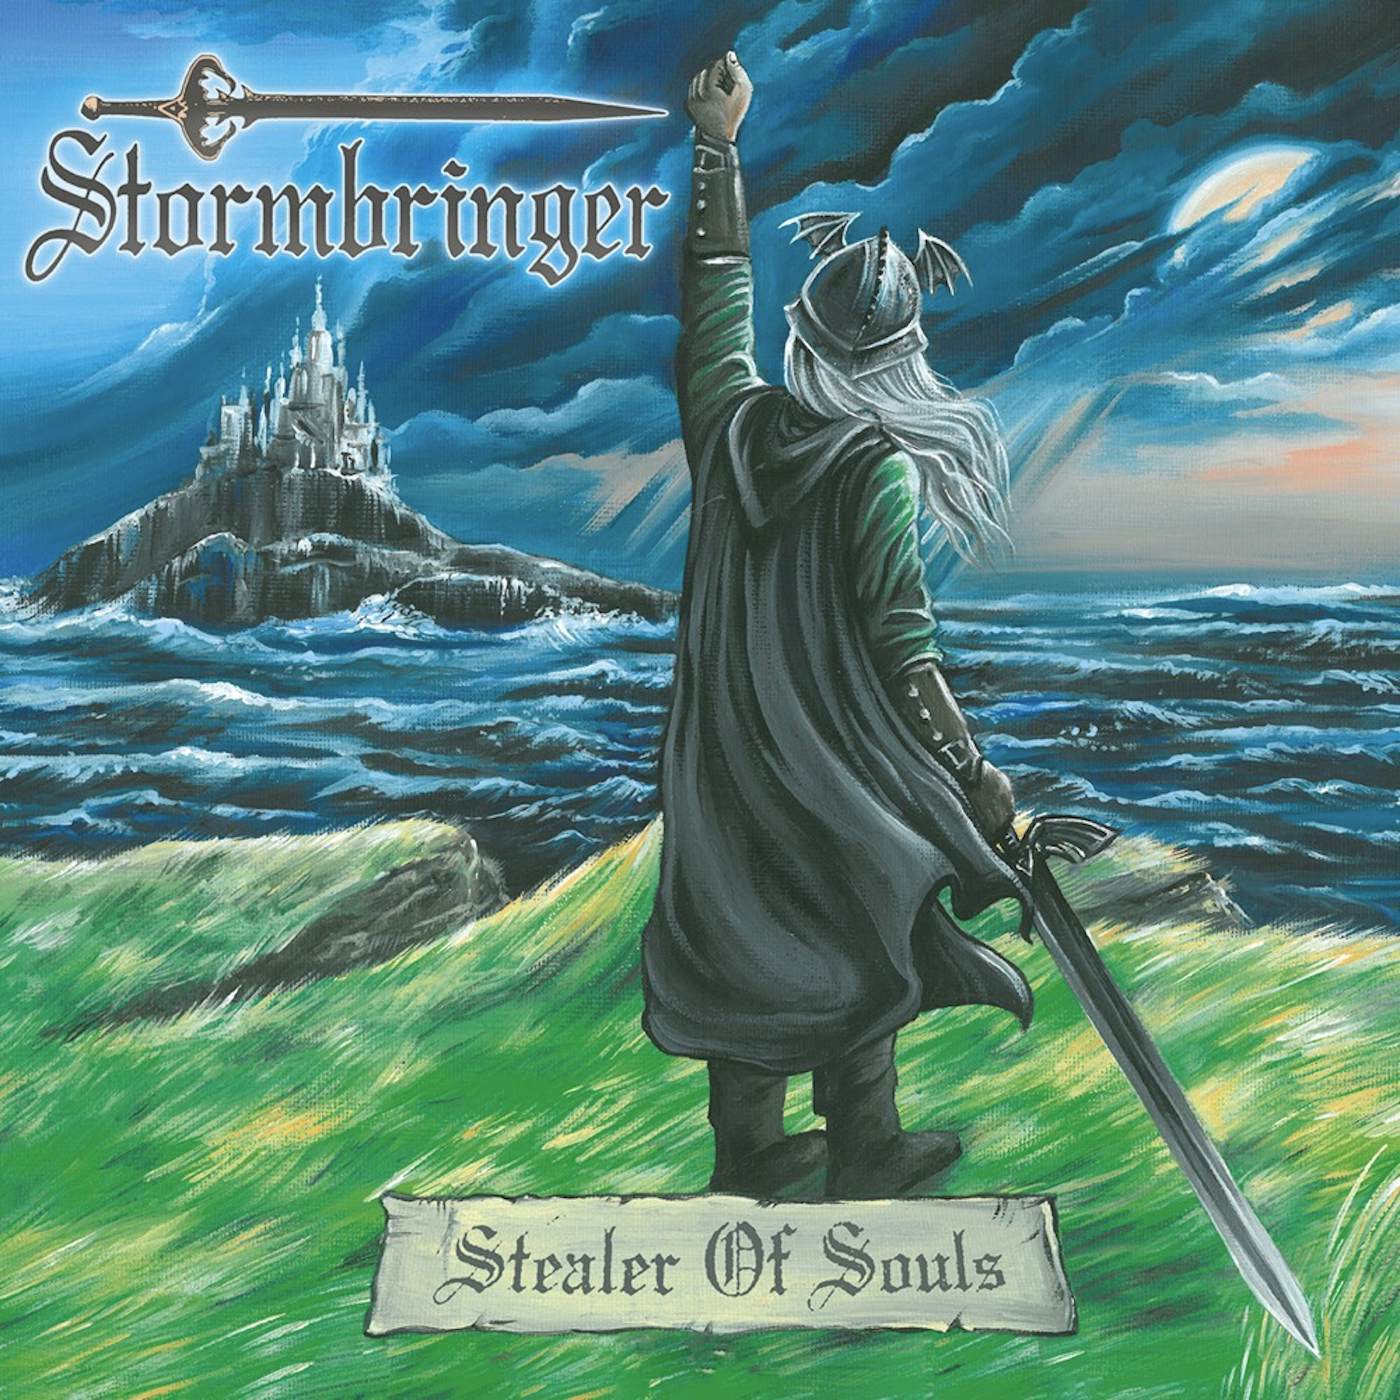 Stormbringer Stealer Of Souls CD